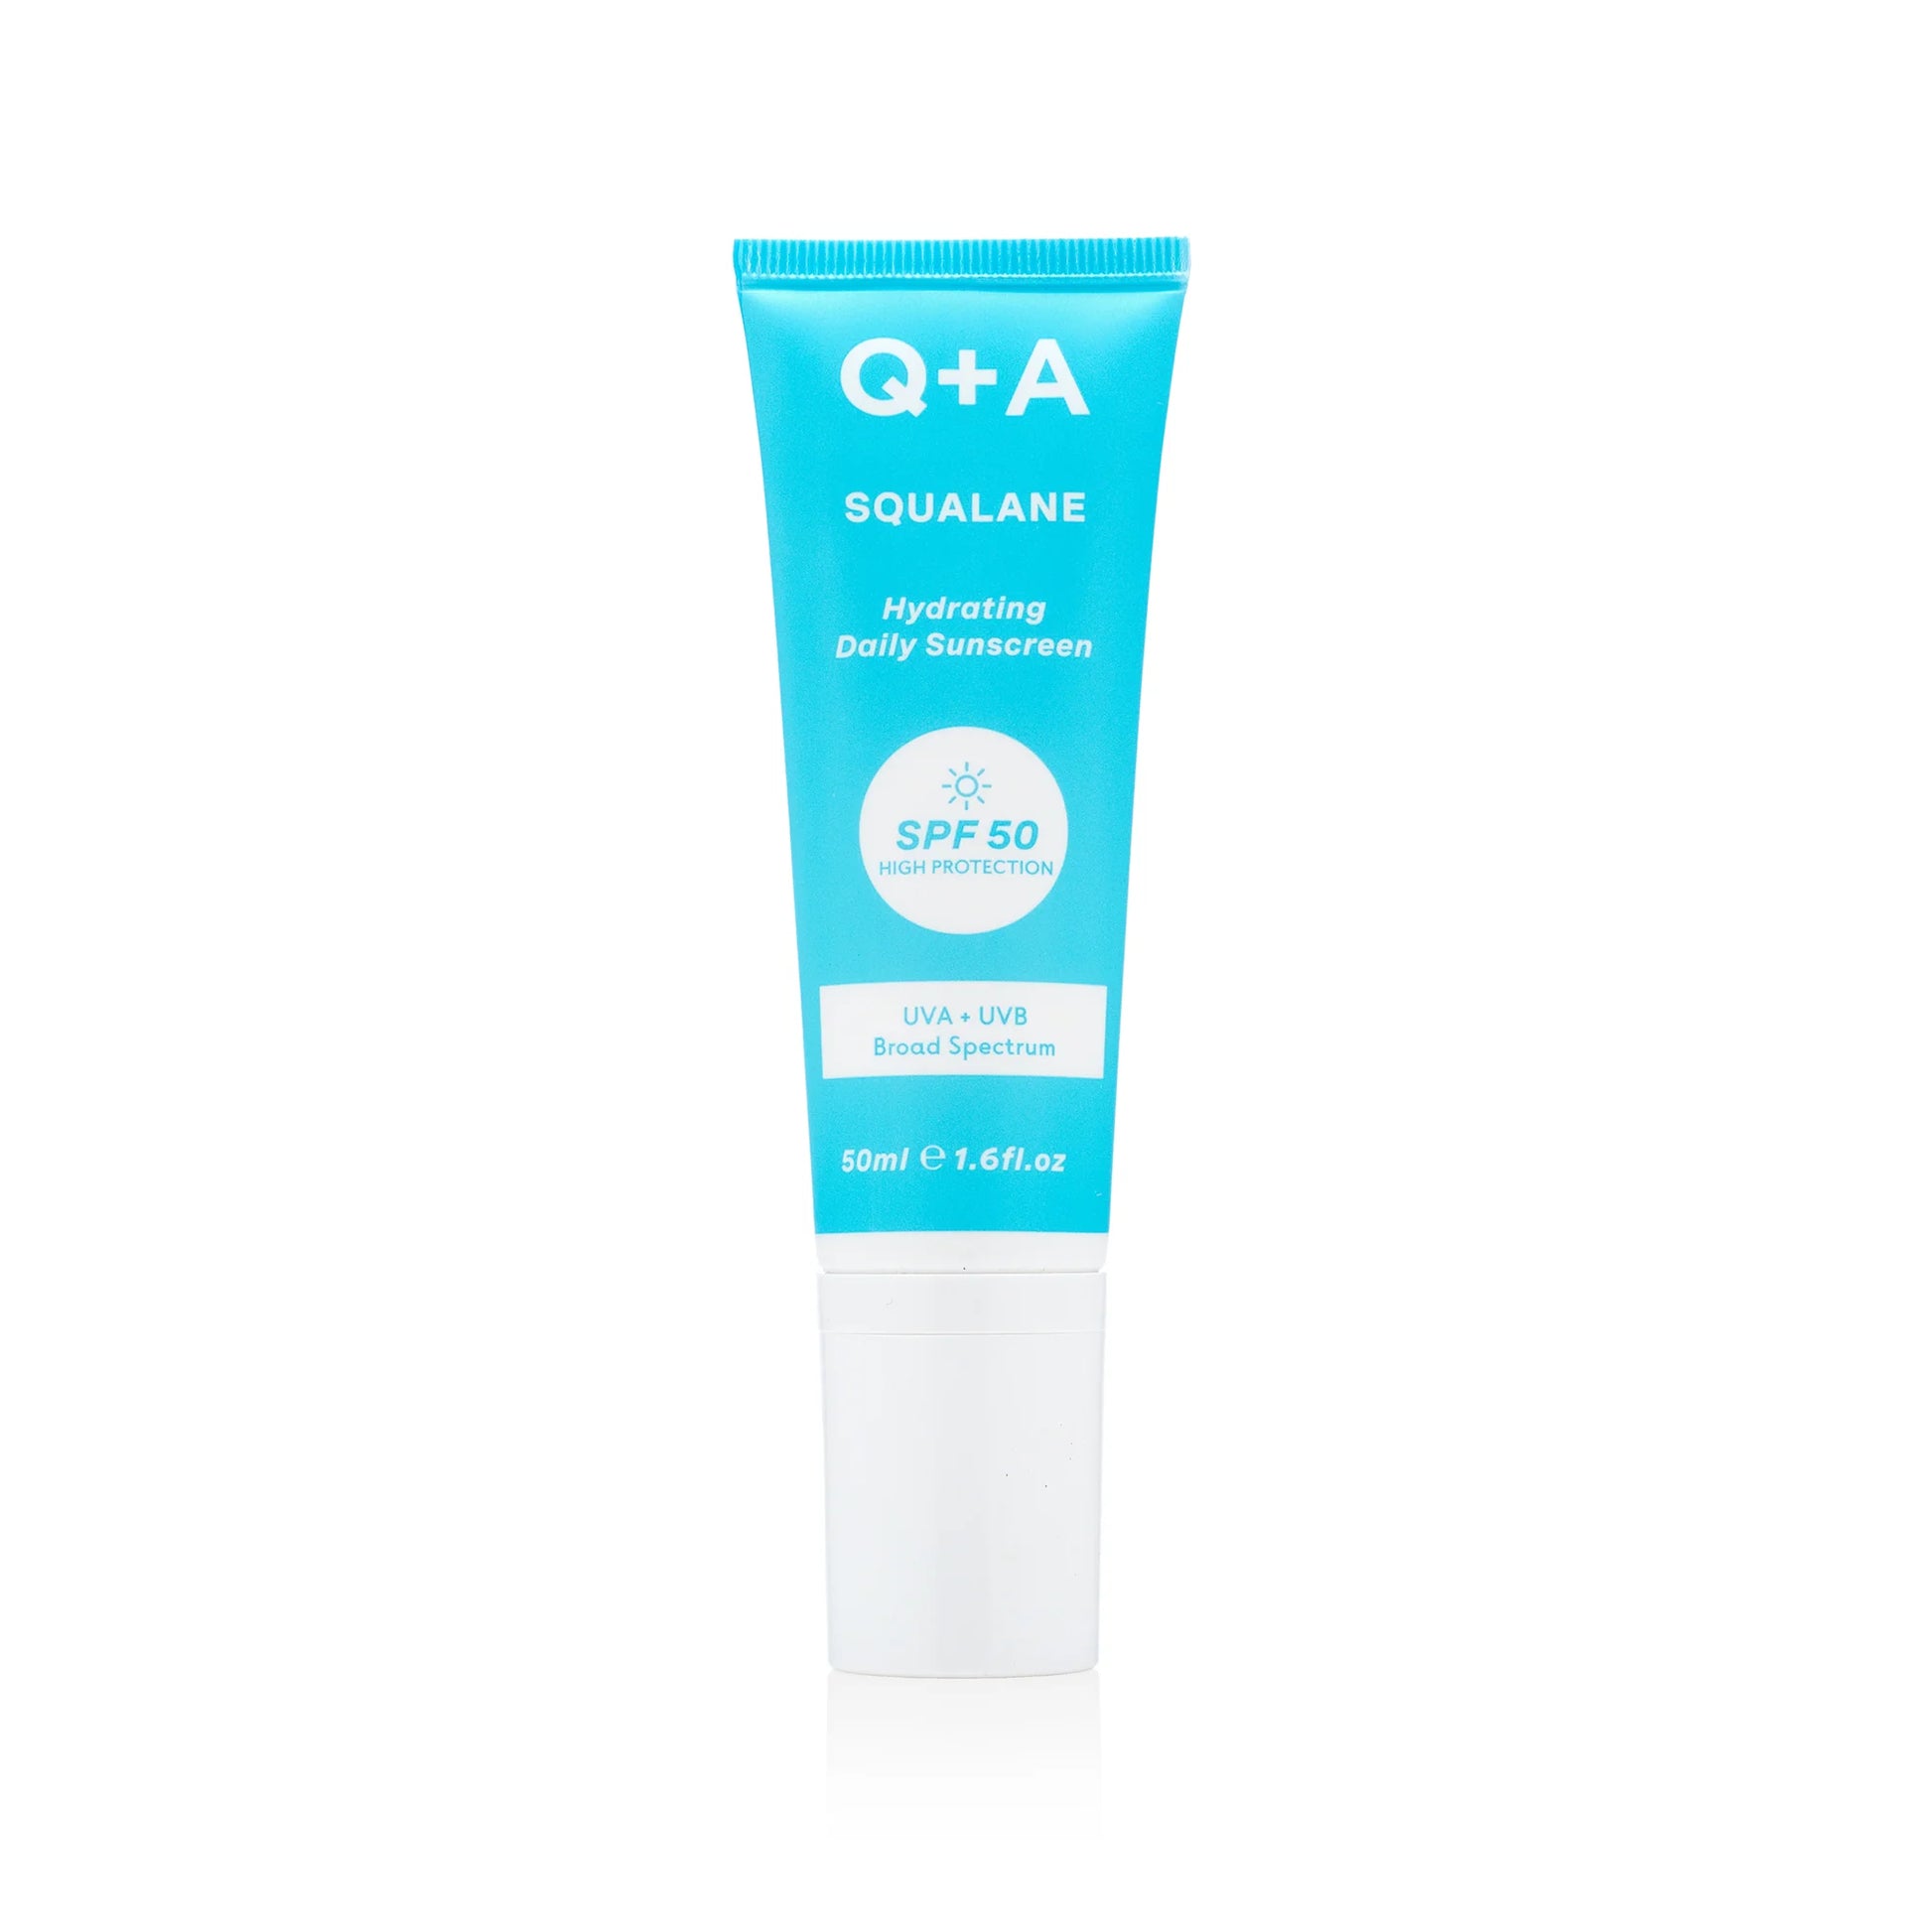 Q+A Squalane Hydrating Daily Sunscreen SPF 50 pleťový krém s ochranným faktorom